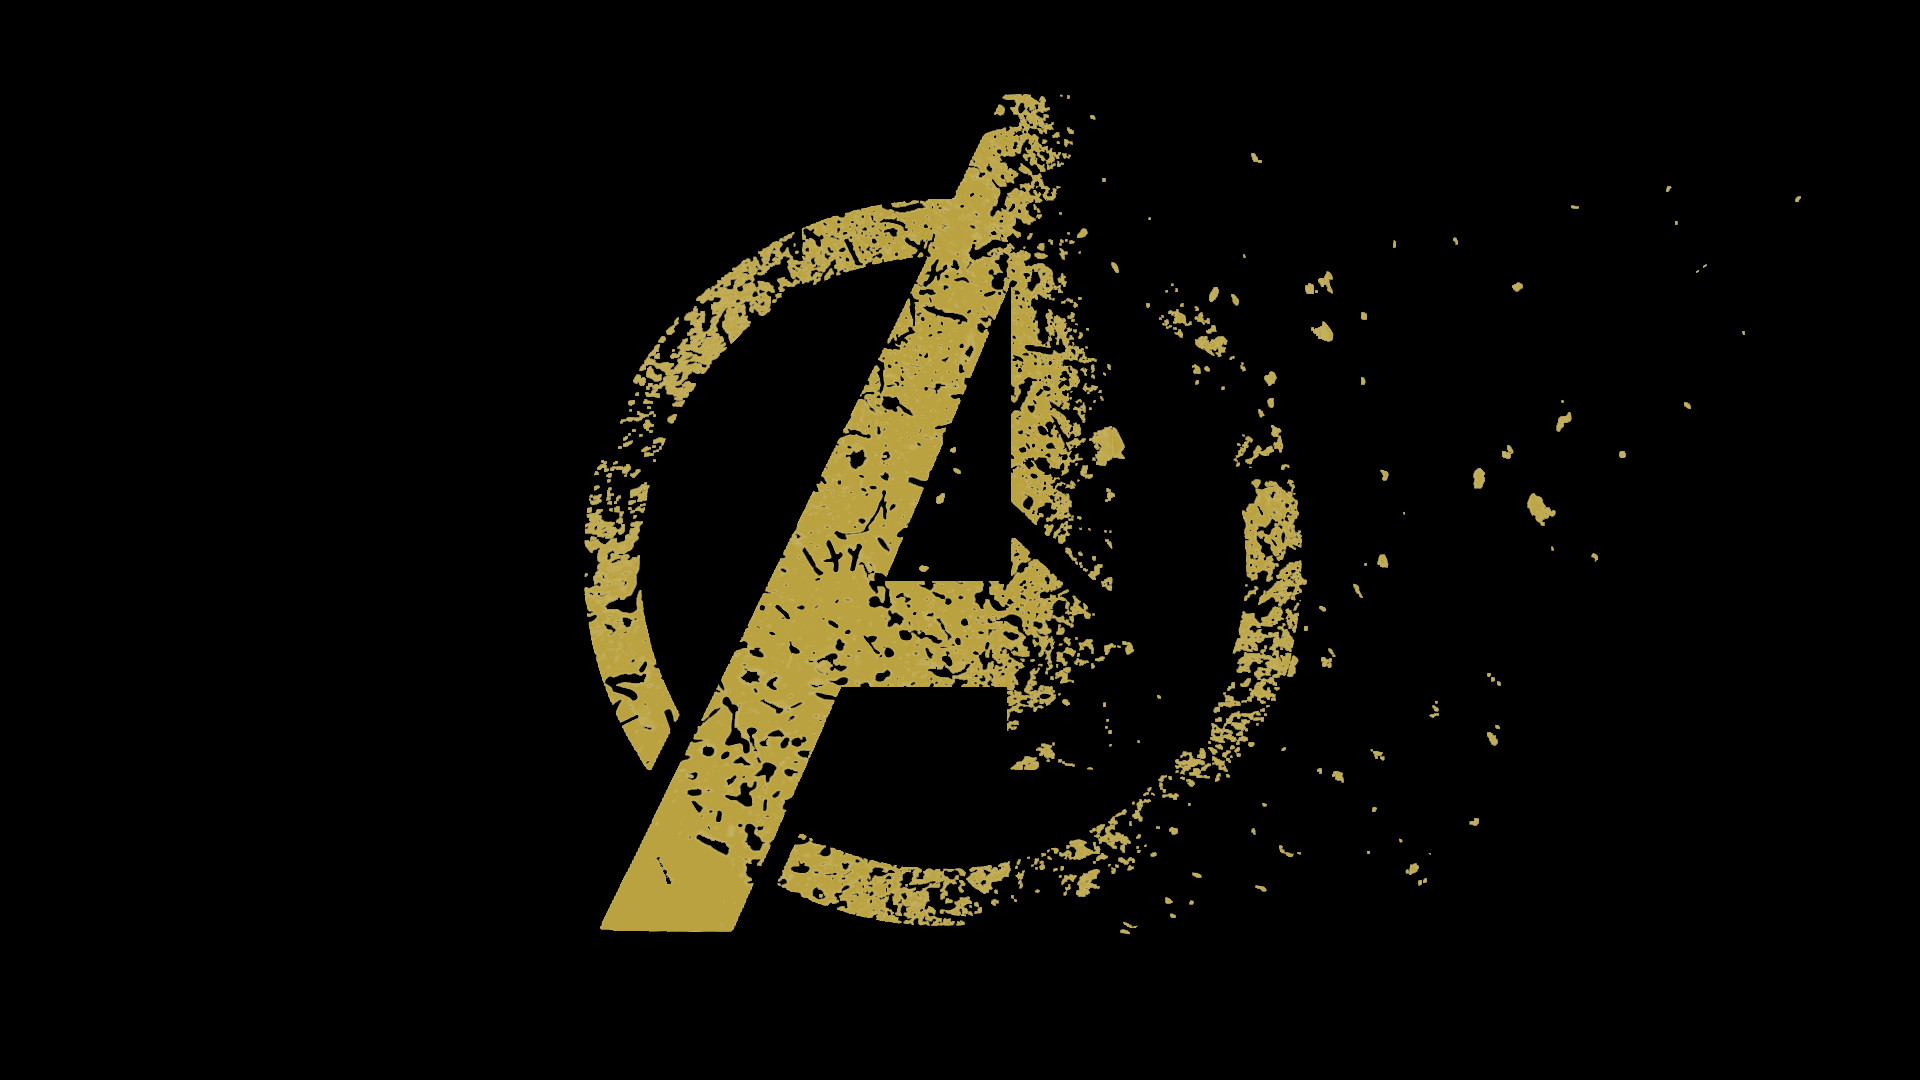 1920x1080 Avengers Endgame Movie Logo Disintegrating - by Nicksayan - Image #4430 -  Licence: Free